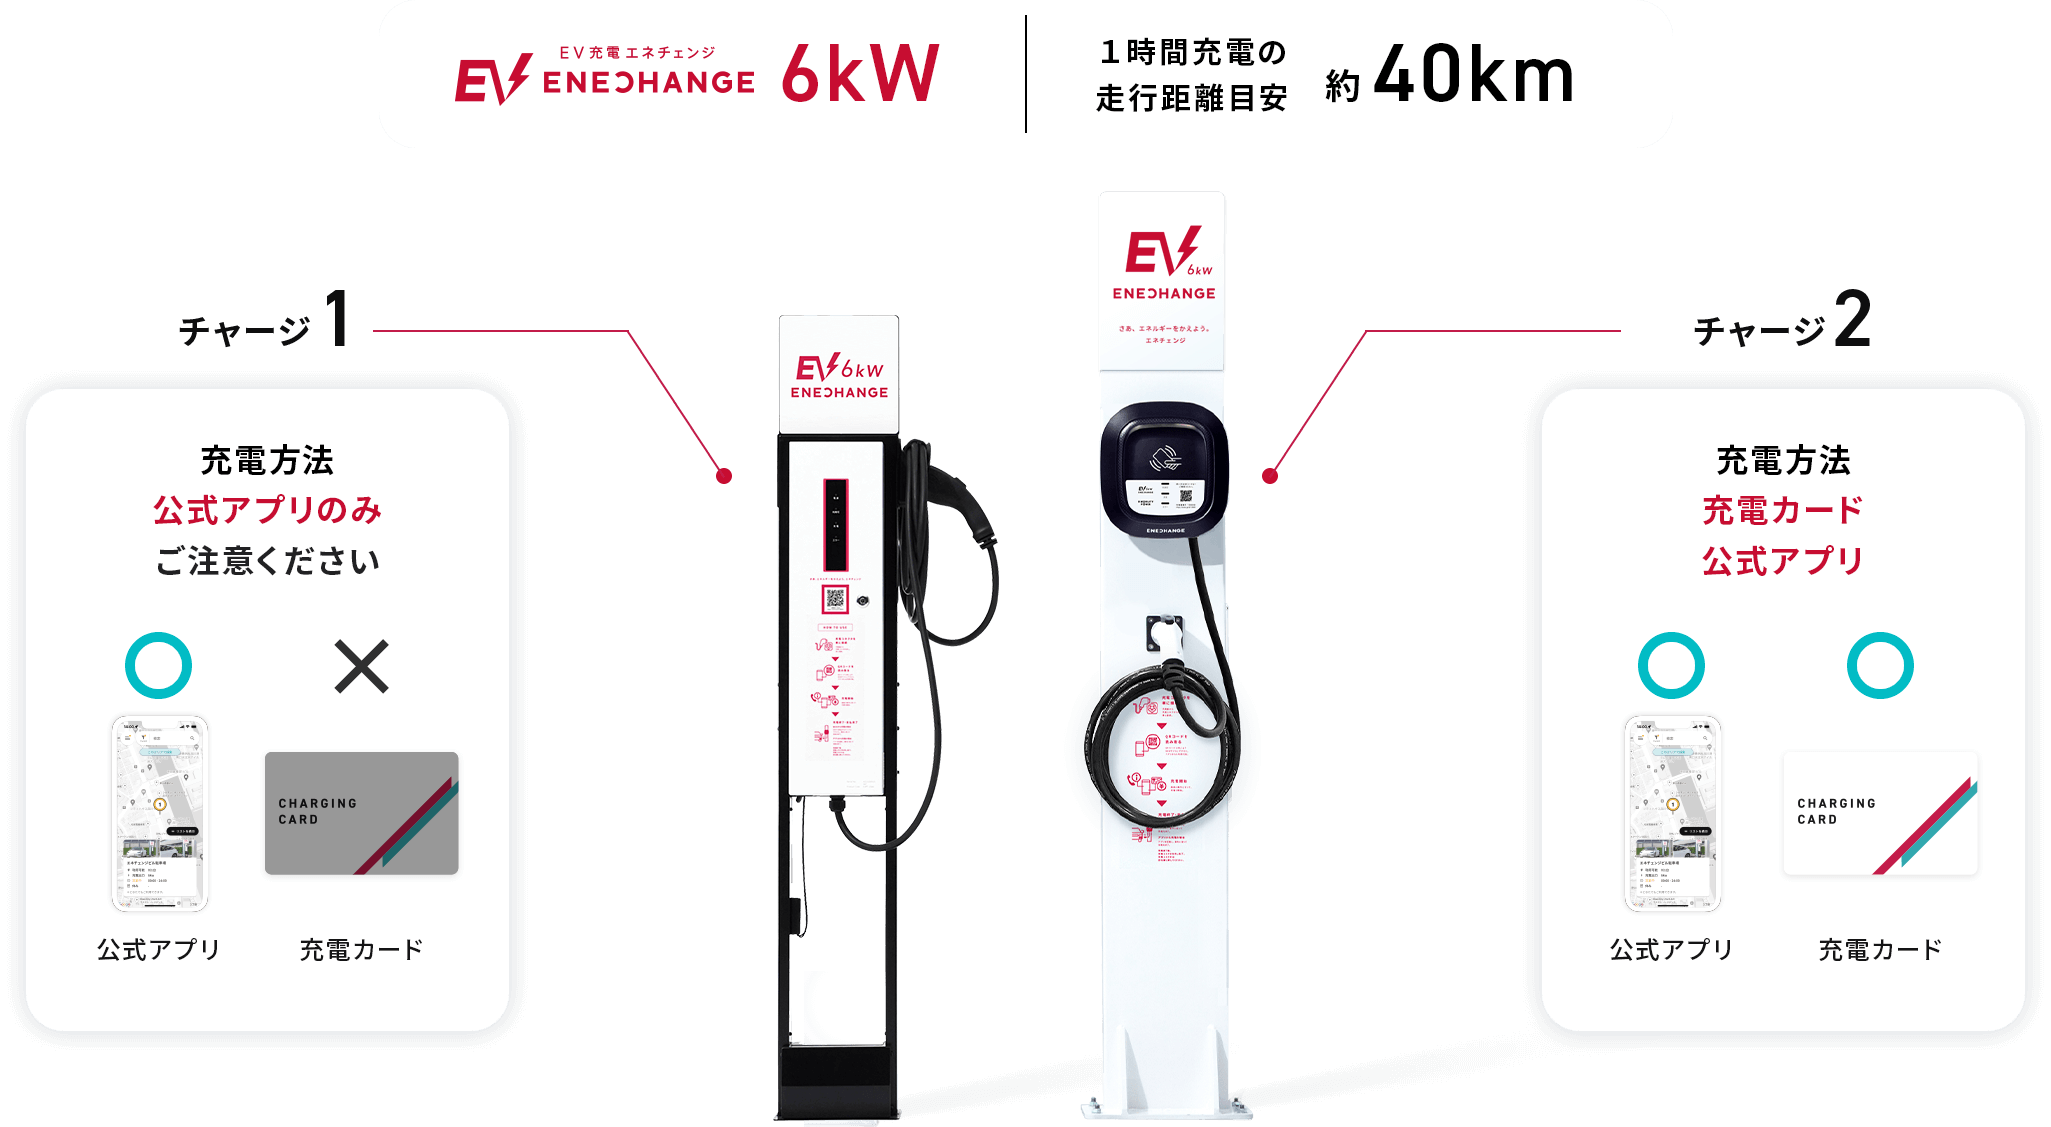 EV充電エネチェンジ6kw 1時間充電の走行距離目安 約40km チャージ1 充電方法 公式アプリのみ ご注意ください チャージ2 充電方法 充電カード 公式アプリ